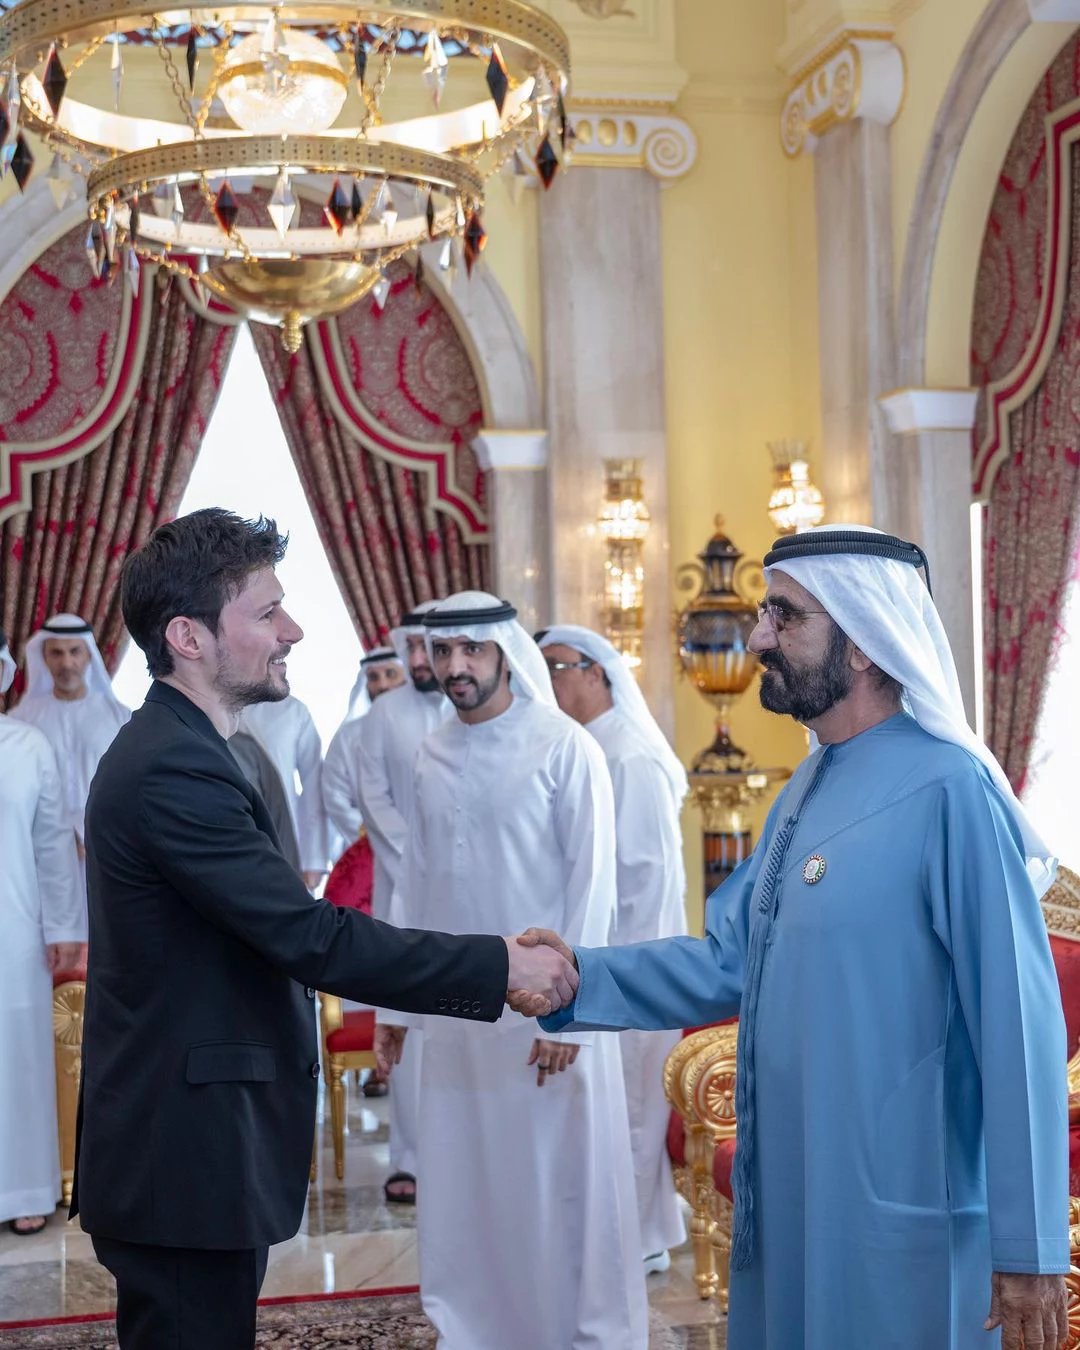 Что означает брошь Павла Дурова на встрече с шейхом Дубая